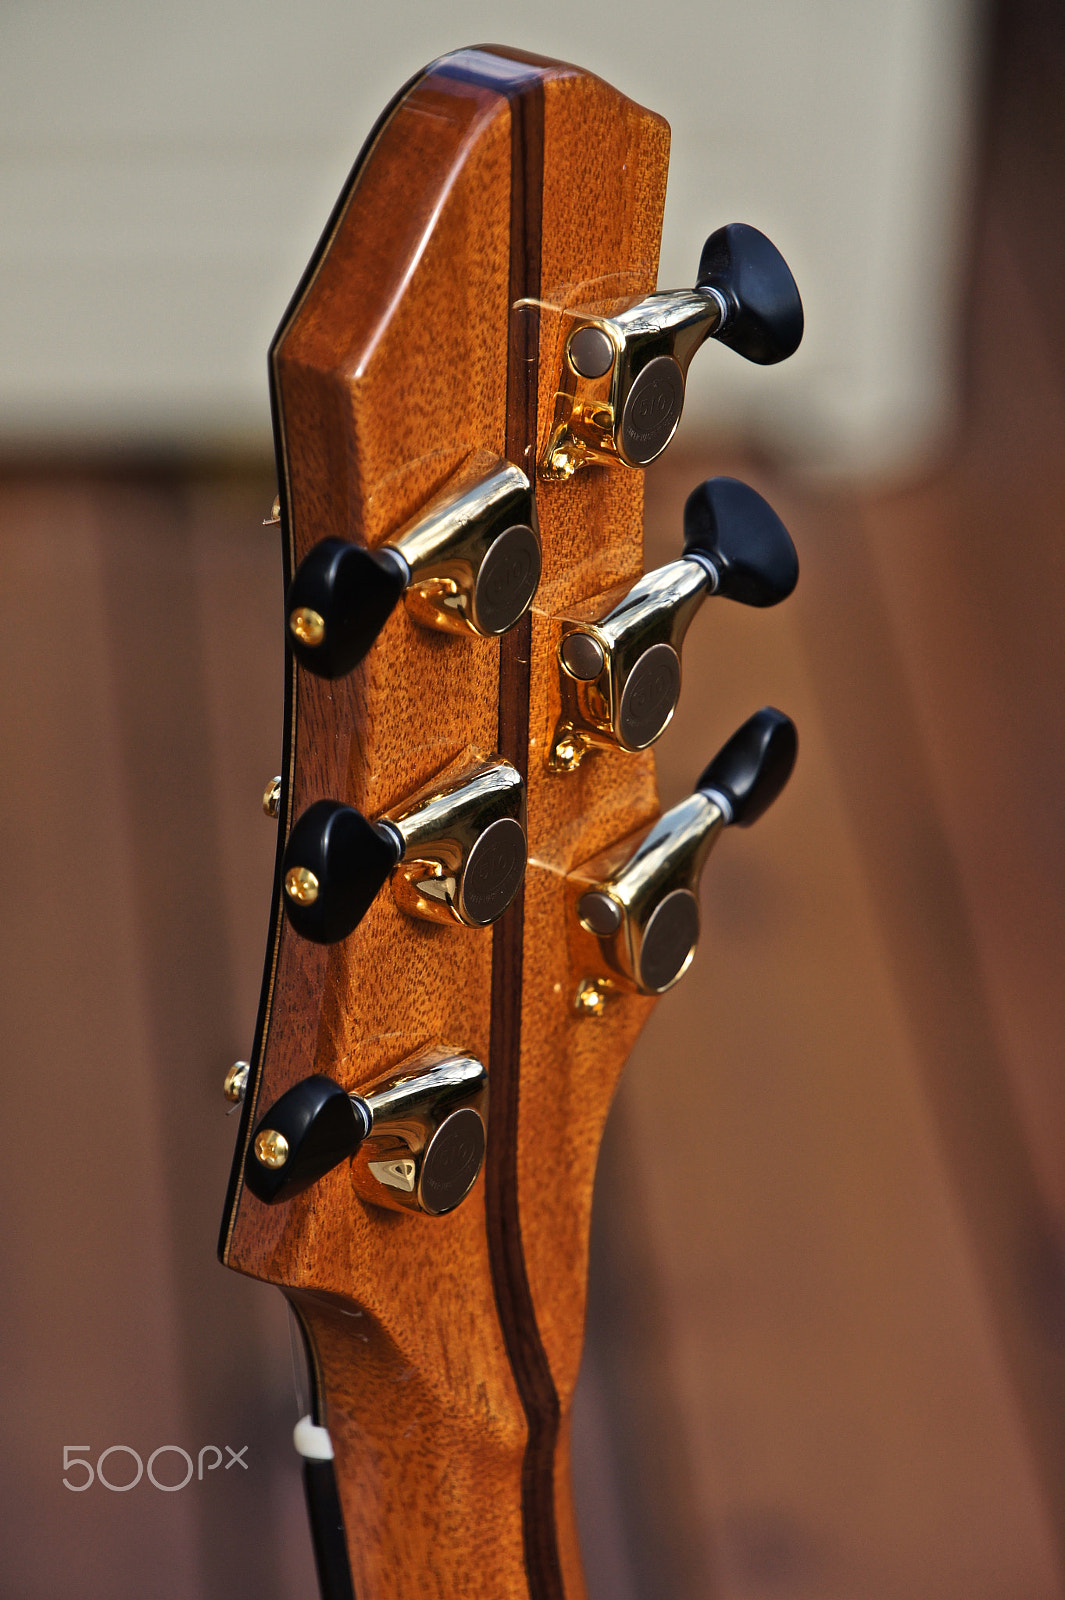 Sony Alpha NEX-5 + Sony E 18-200mm F3.5-6.3 OSS sample photo. Leclair custom acoustic guitar 5-piece neck photography